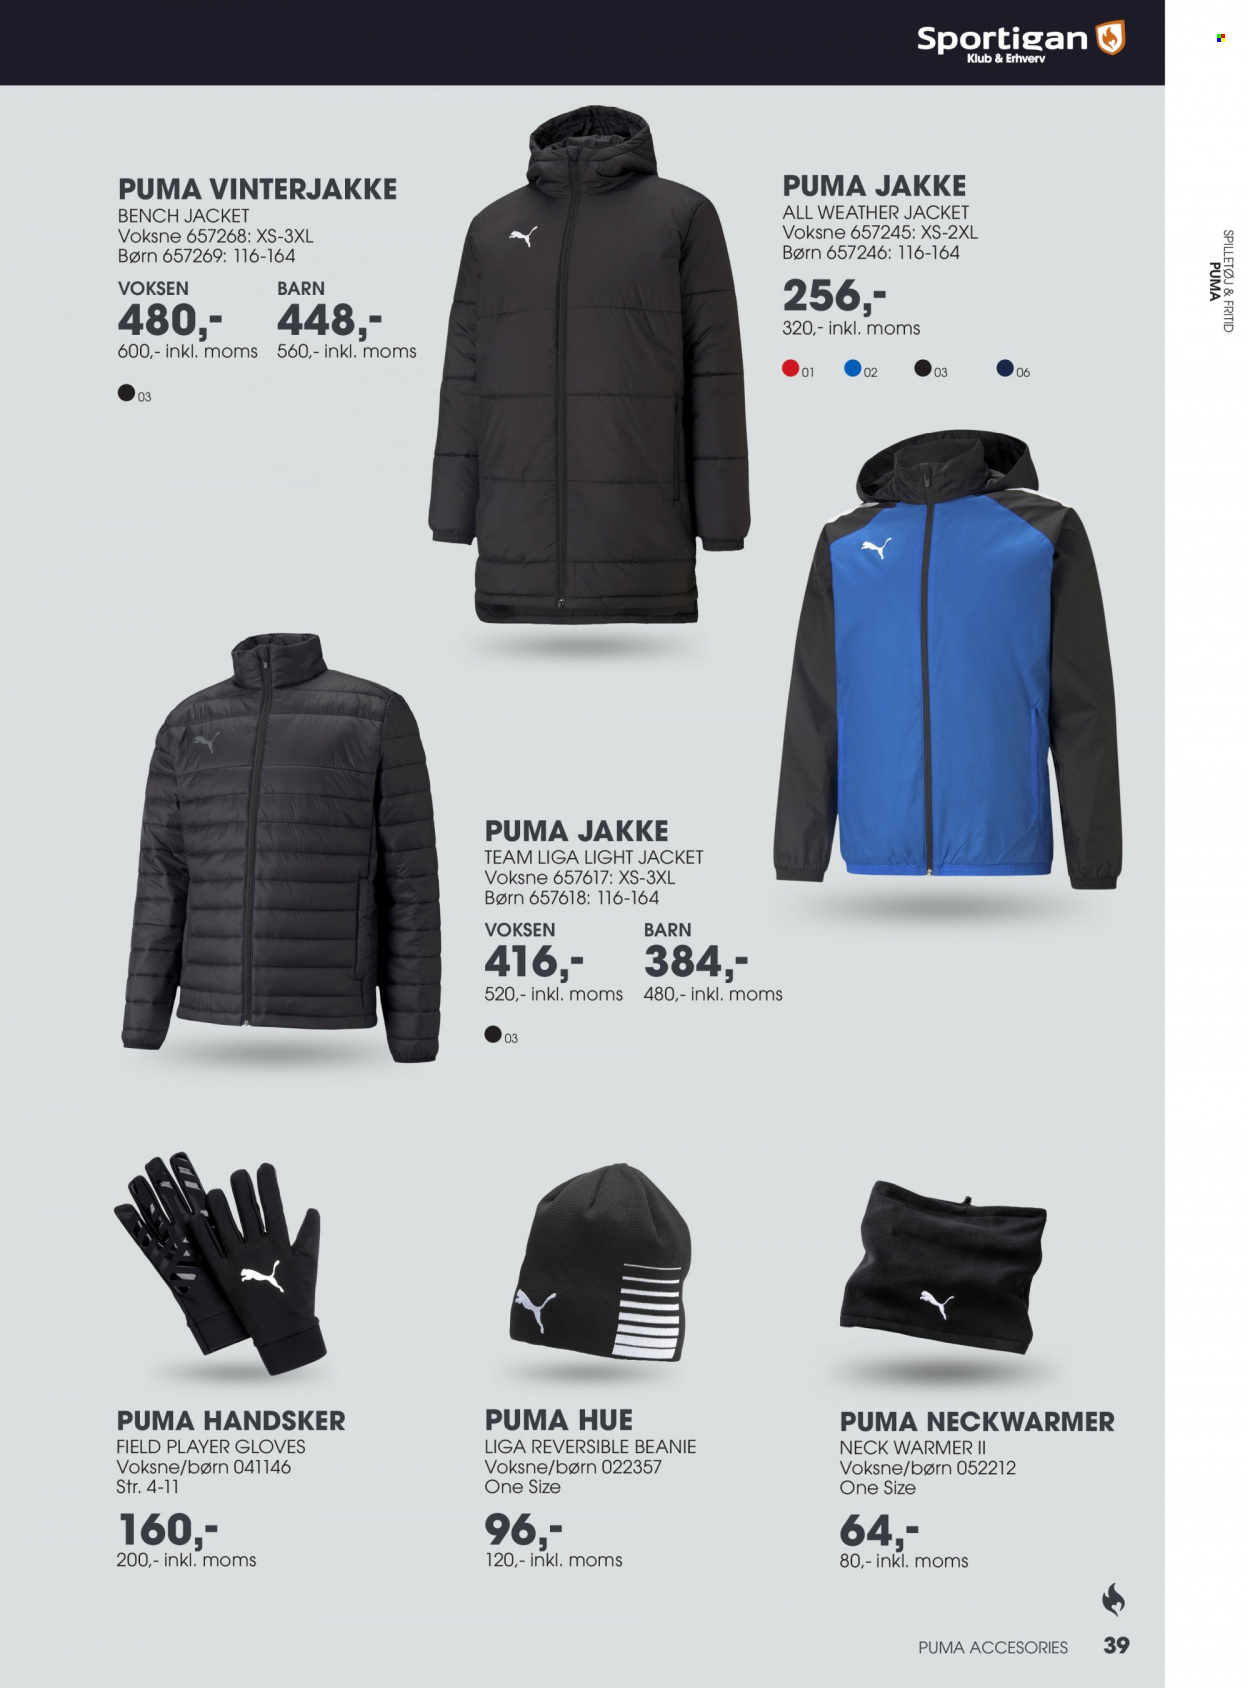 thumbnail - Sportigan tilbud  - tilbudsprodukter - jakke, Puma, Hue, handske. Side 39.